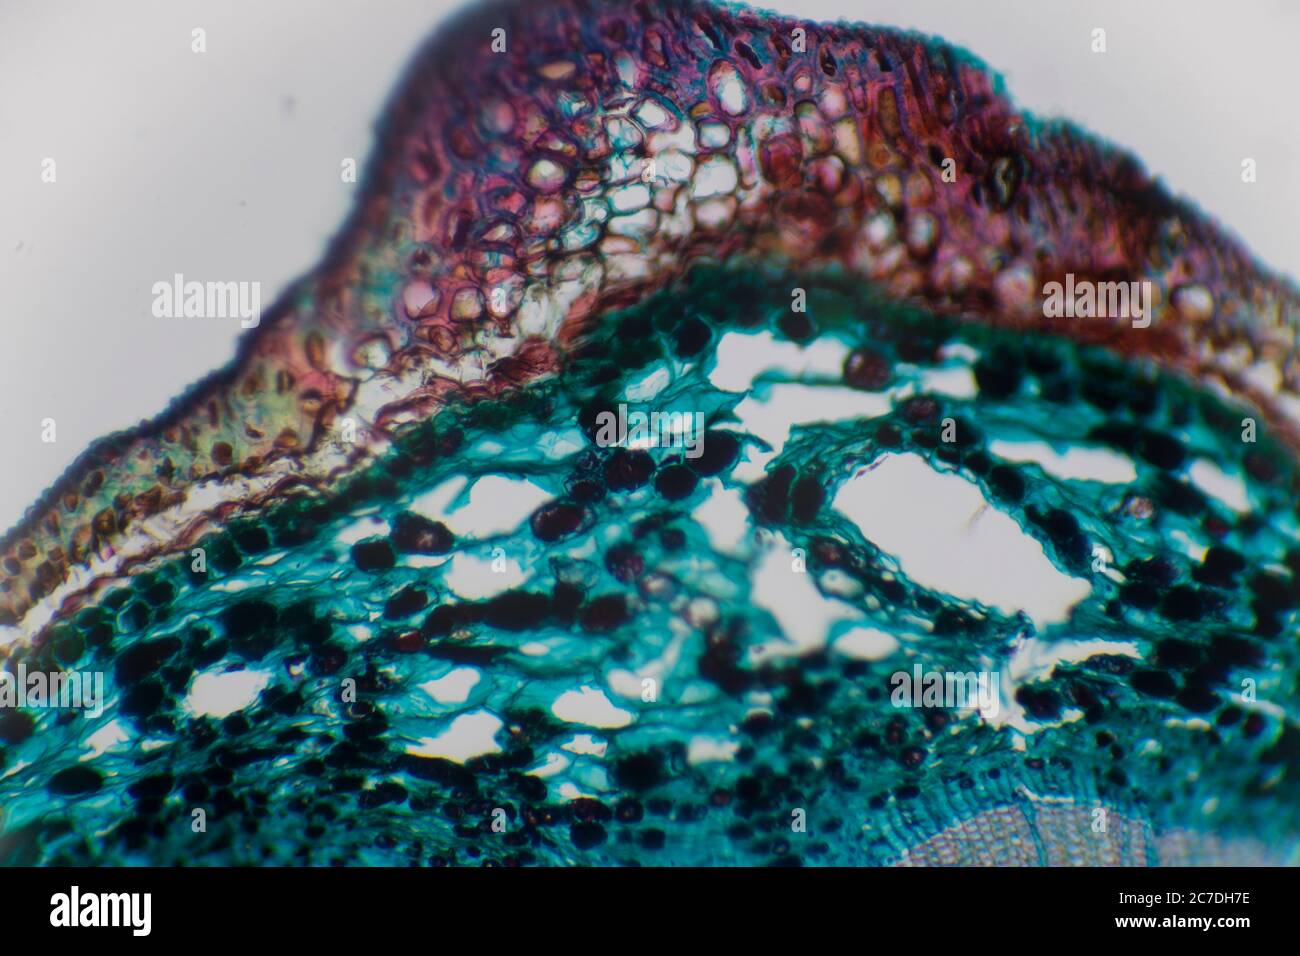 Fotografía microscópica de una célula vegetal con colores rojos y verdes y texturas celulares. Foto de stock